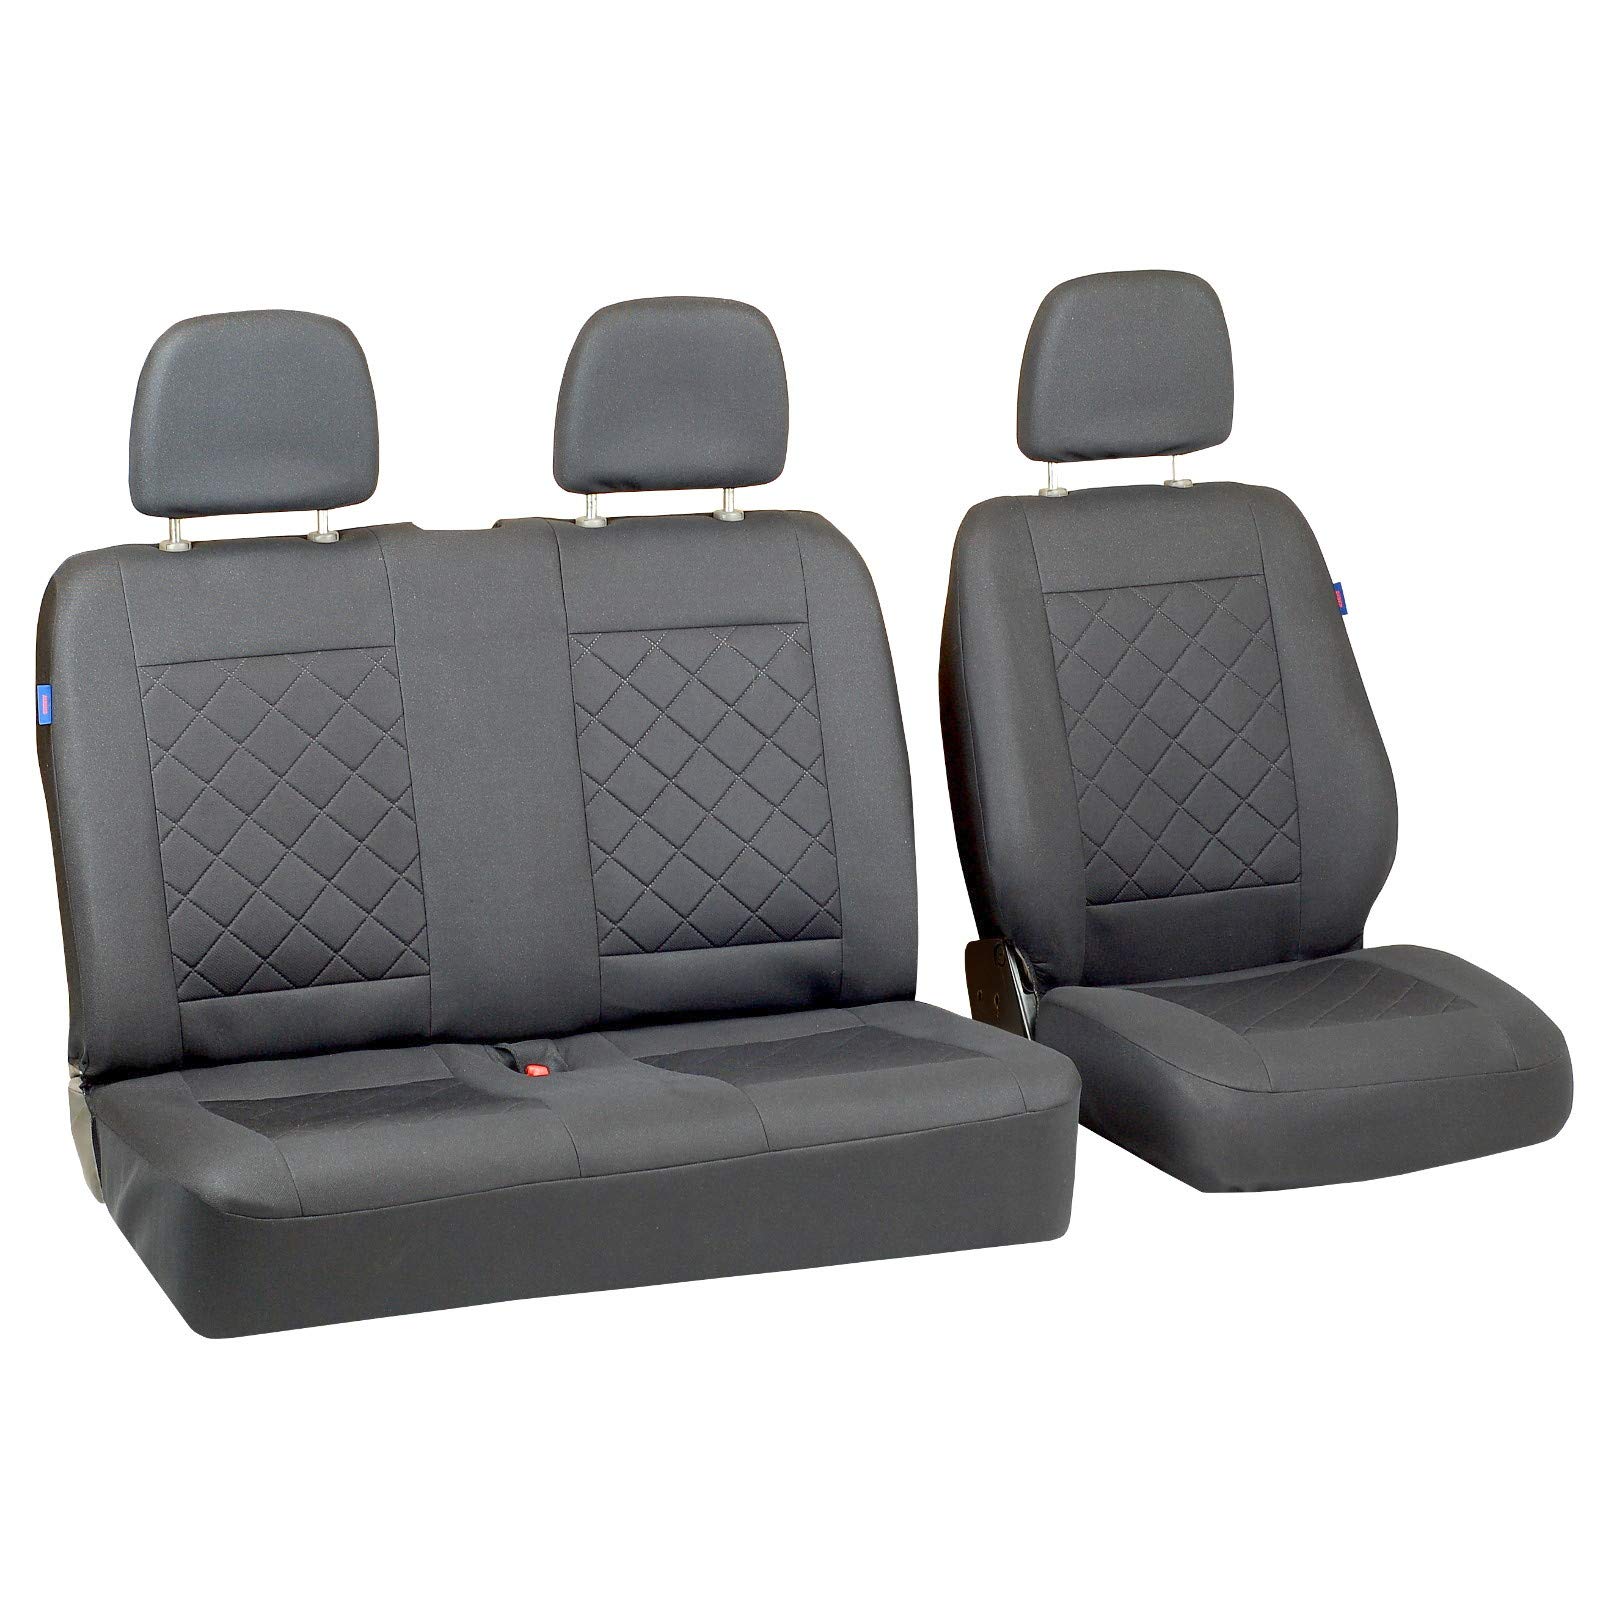 Zakschneider L300 Autositzbezug Set 1+2 - Farbe Premium Grau gepresstes Karomuster von Zakschneider